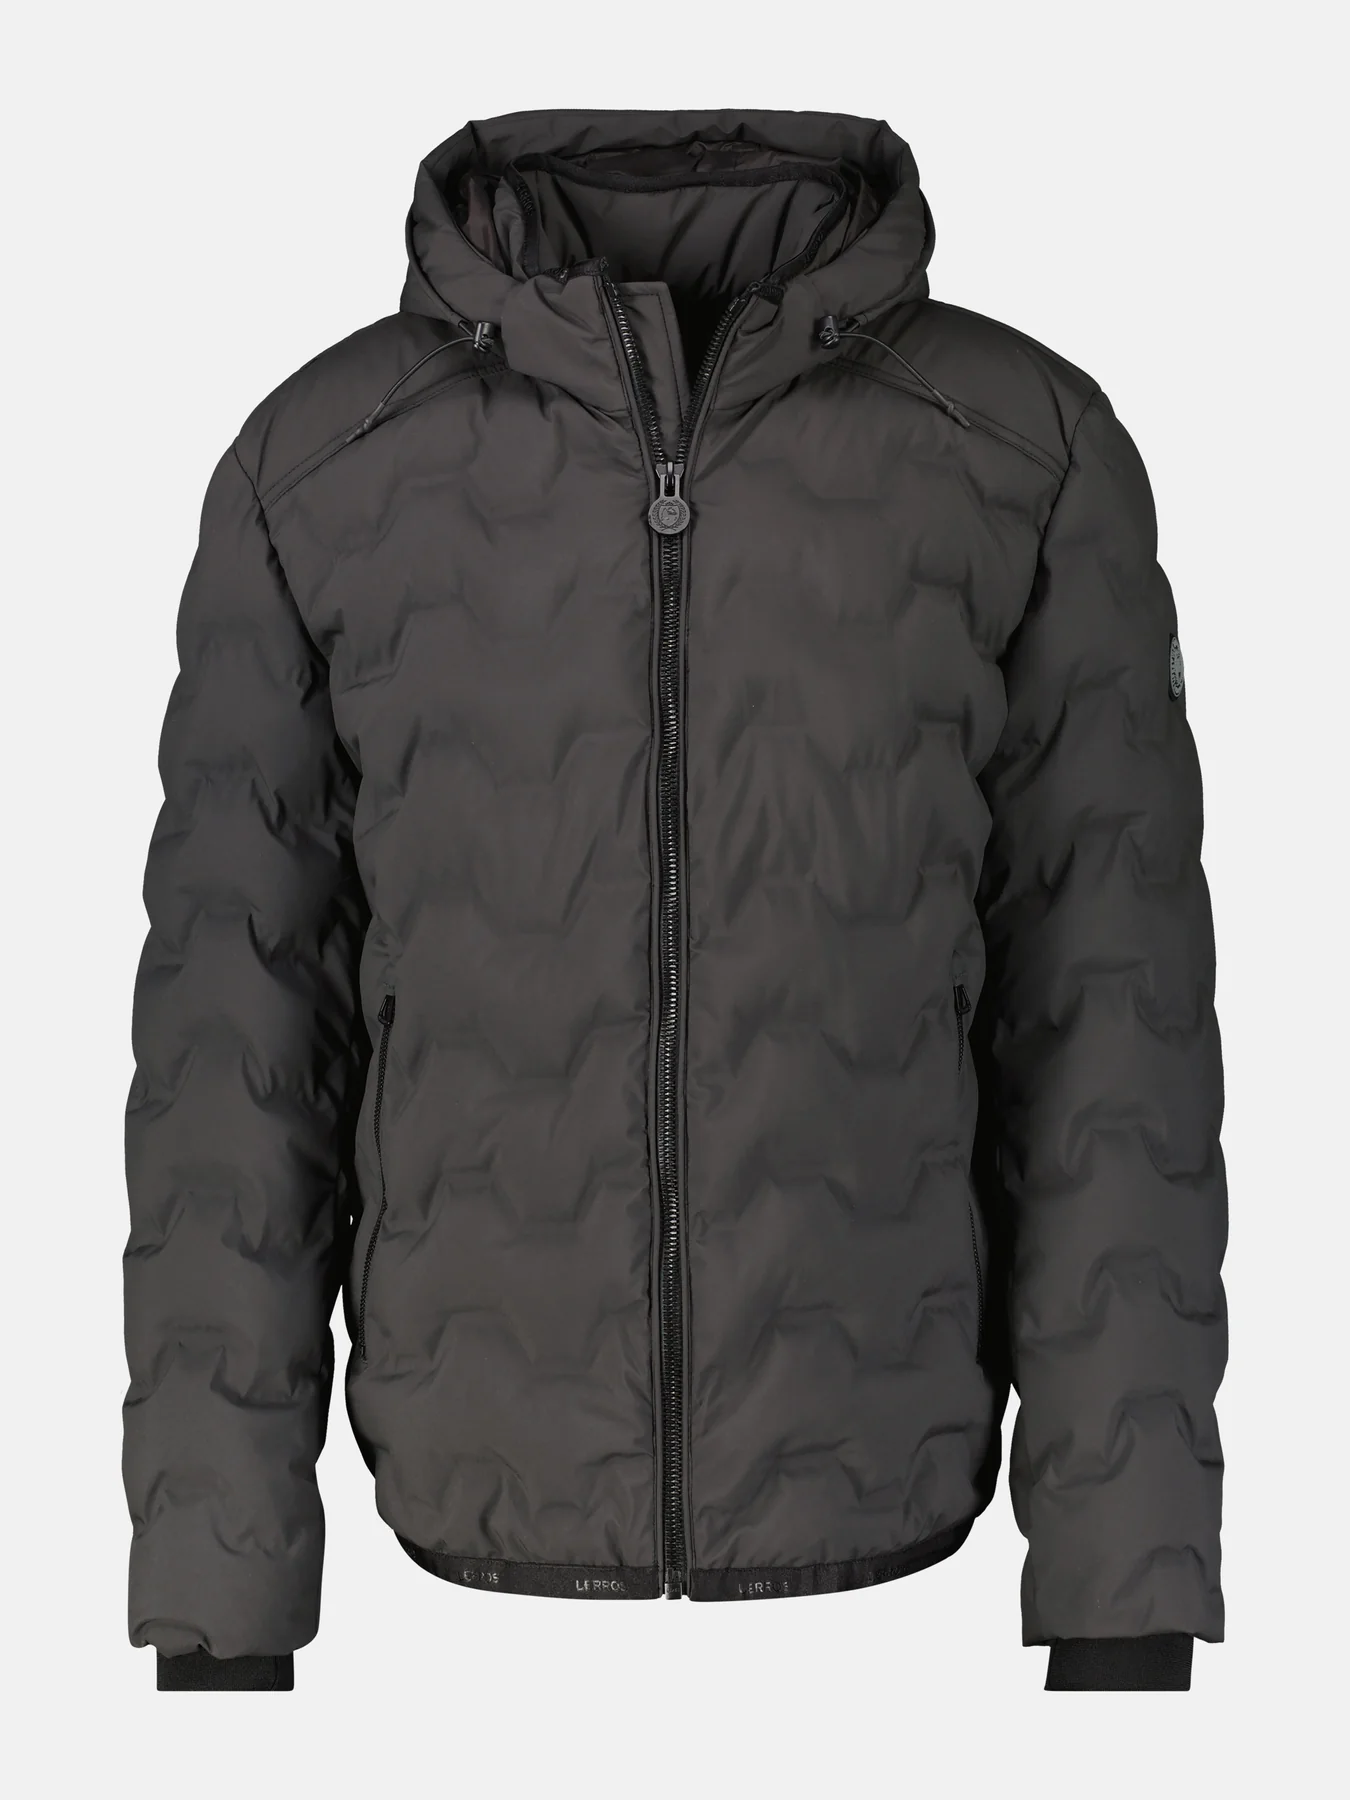 Pánská zimni bunda s kapucí černá